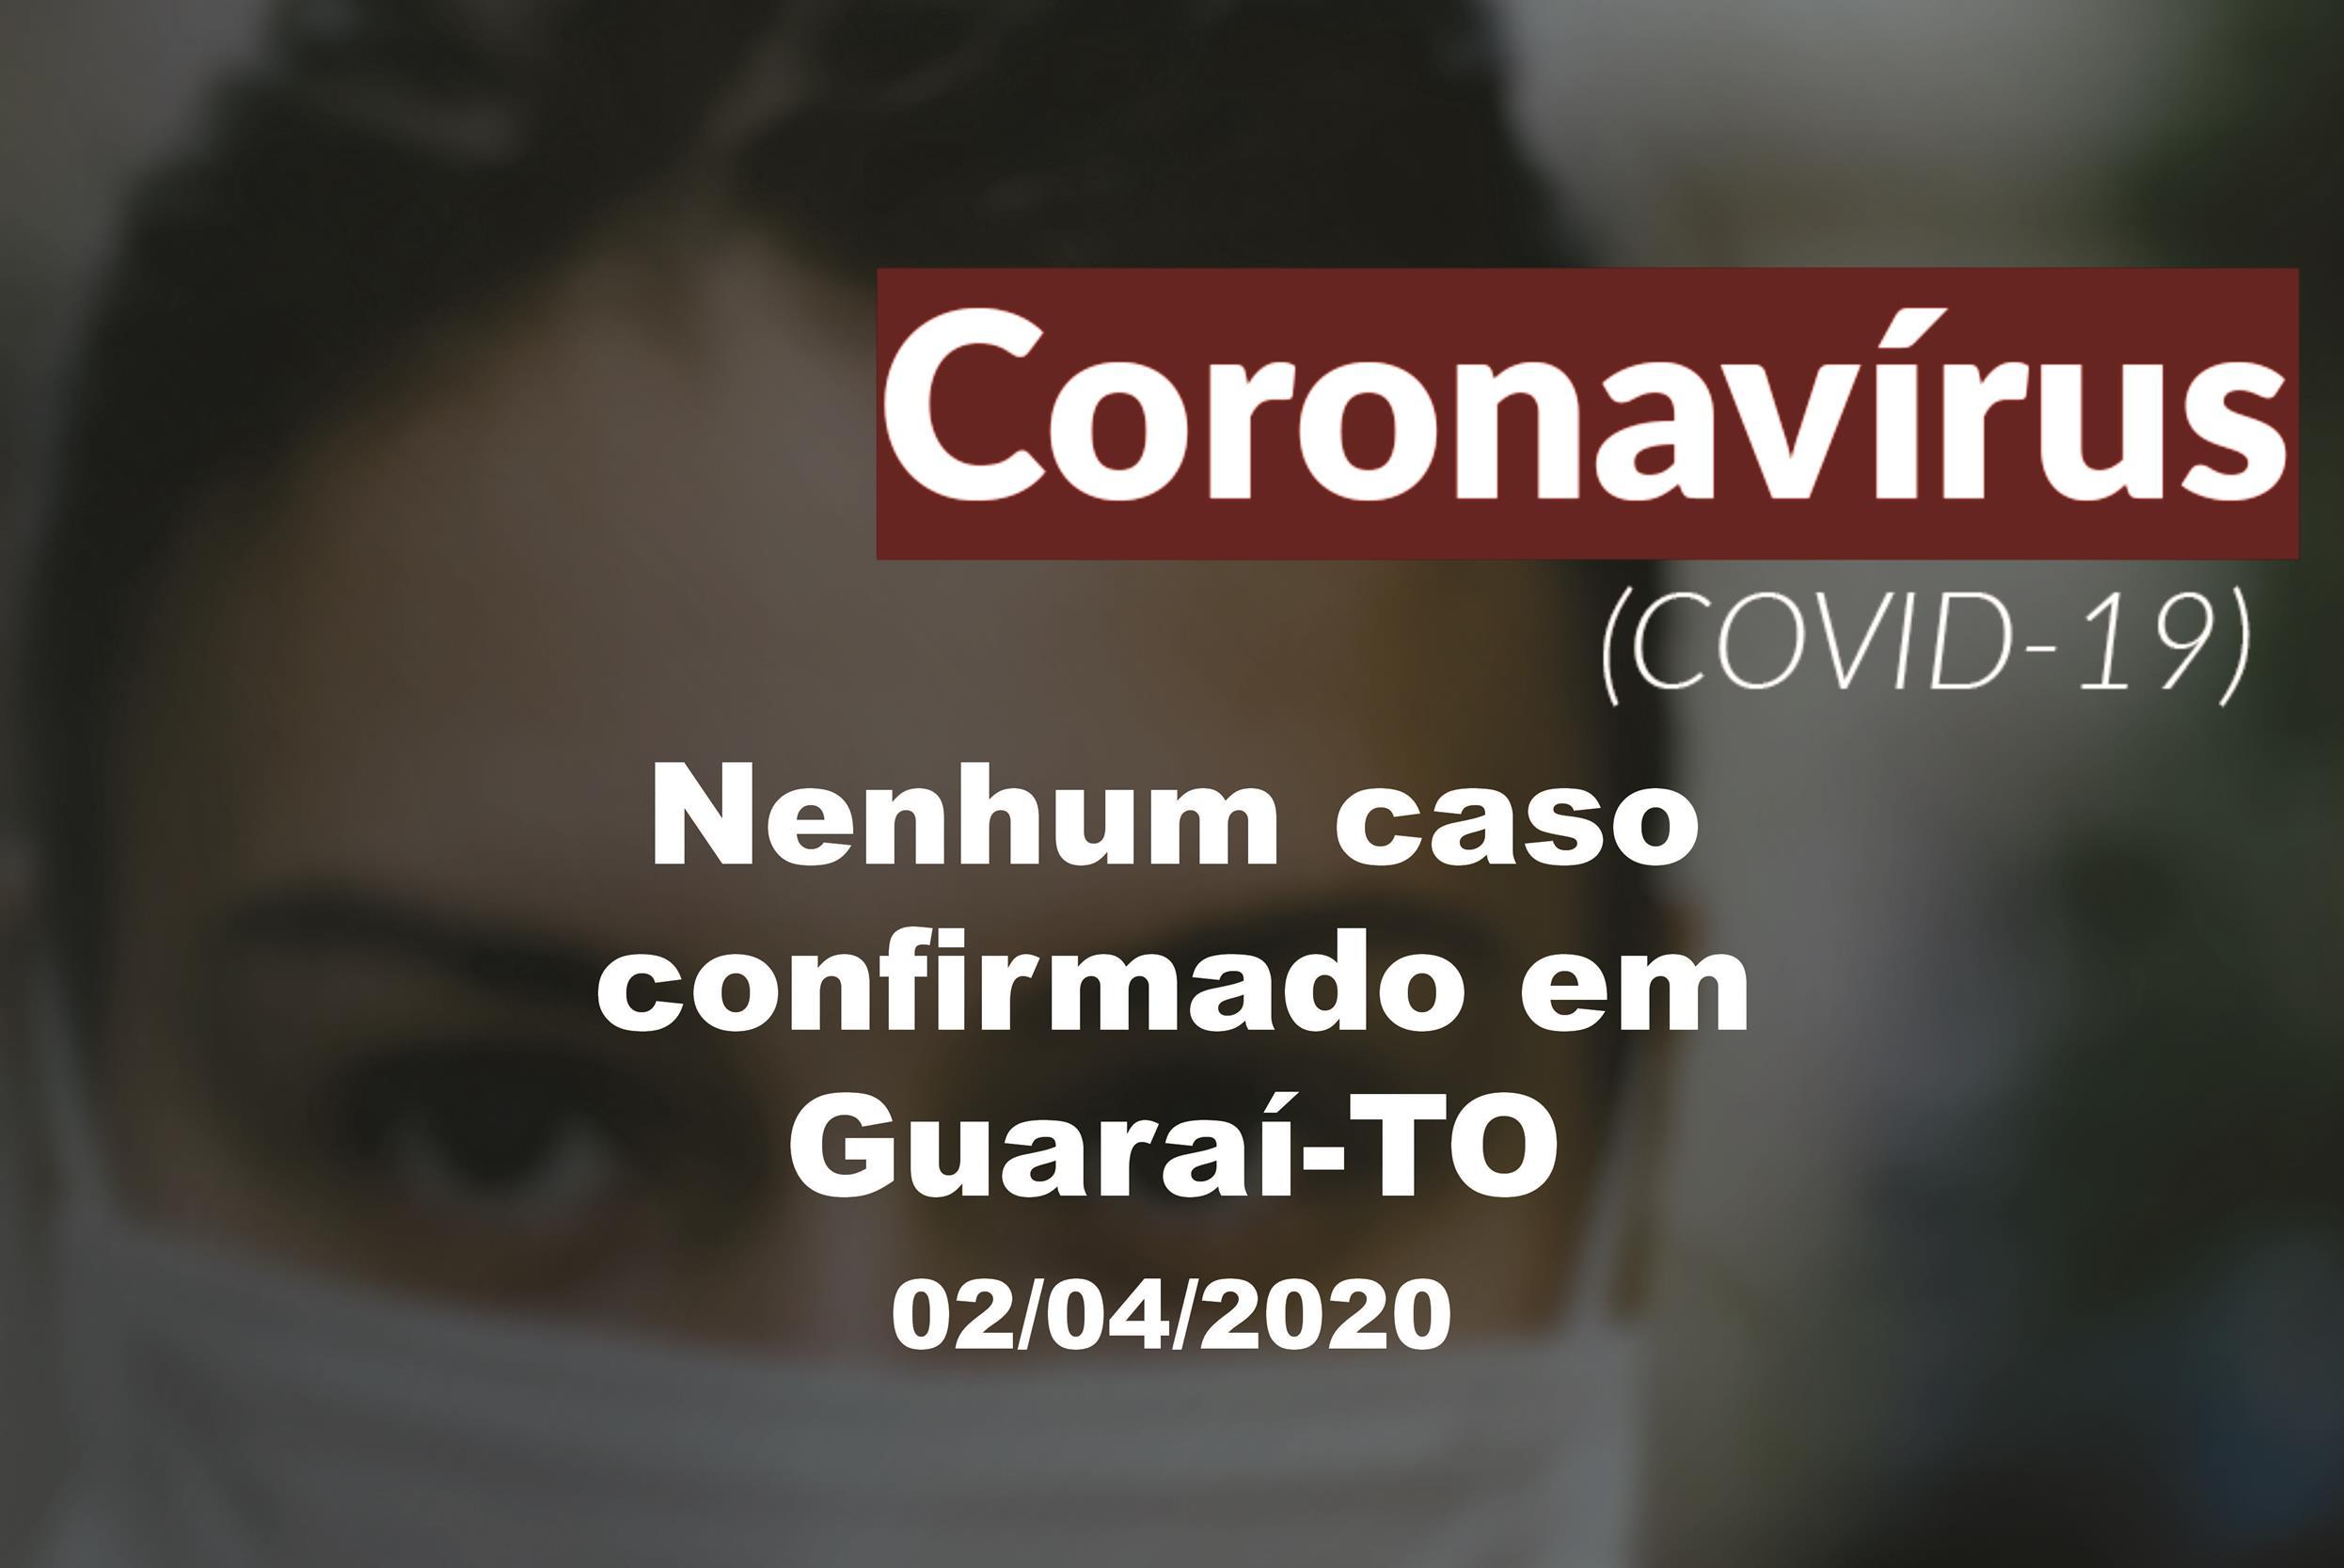 Das 27 suspeitas de Covid-19 em Guaraí, 23 não passaram por exame e 4 foram descartadas